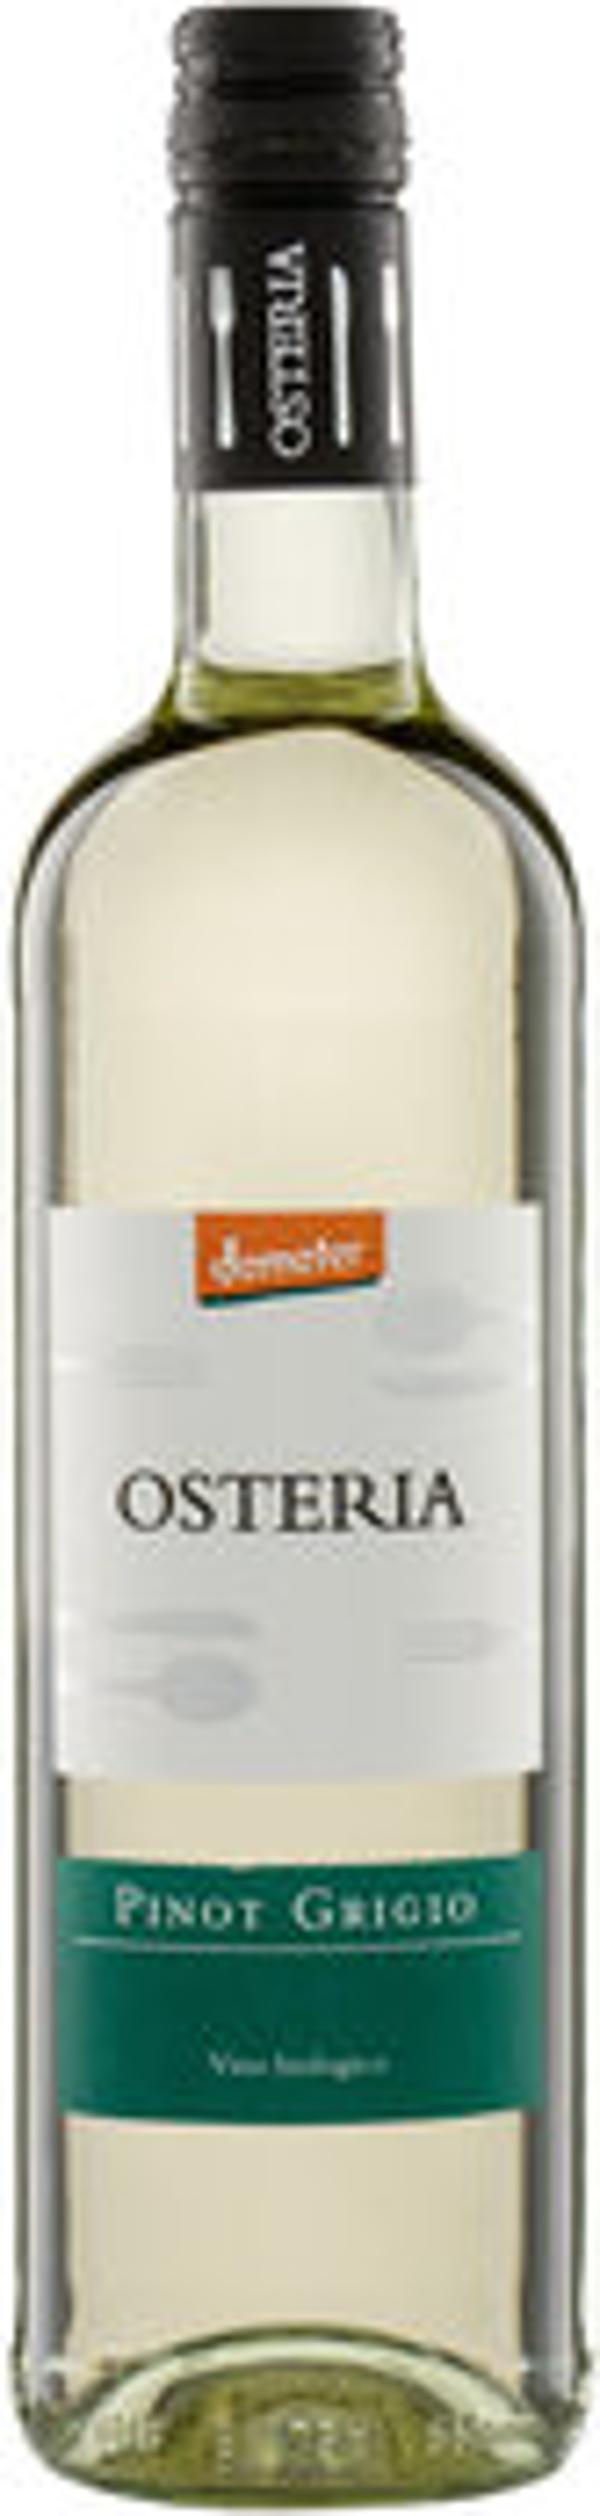 Produktfoto zu Pinot Grigio IGT Osteria, Weißwein trocken 0,75l